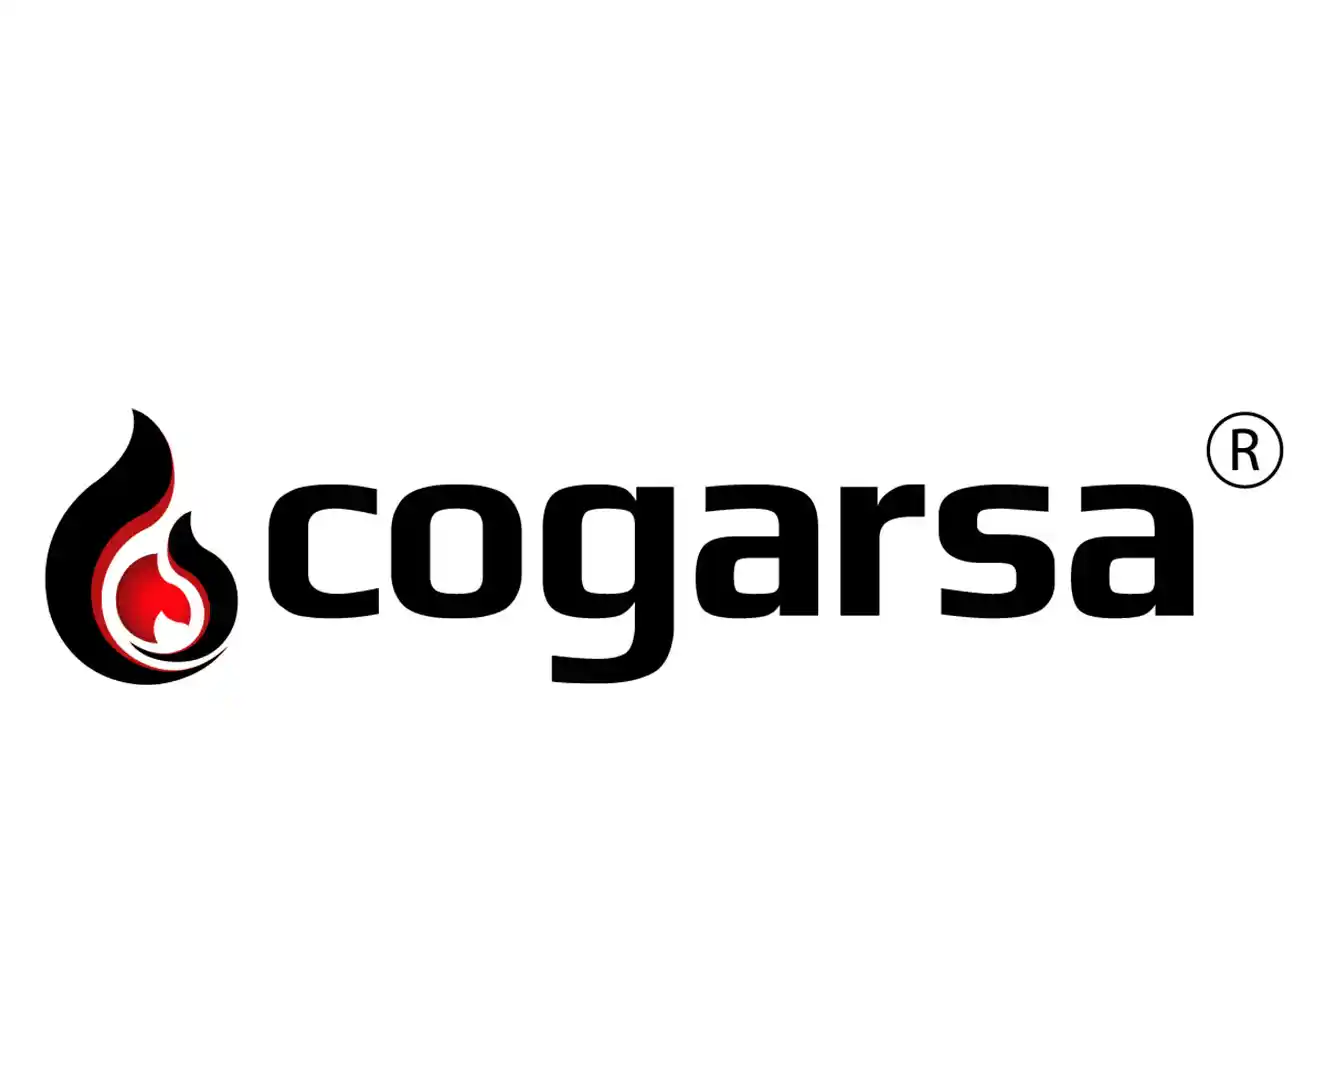 Cogarsa_C